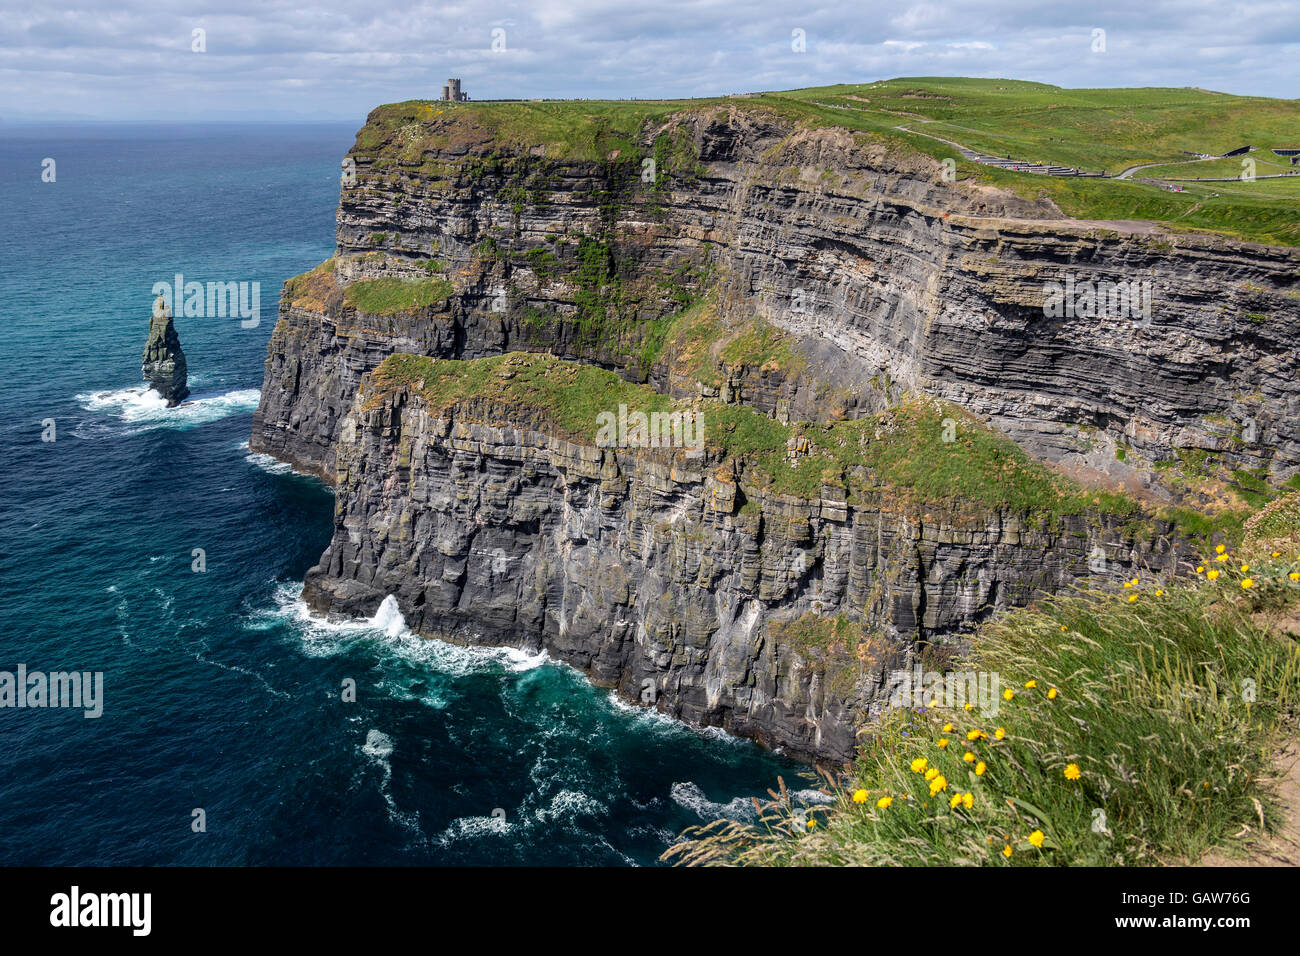 Die Klippen von Moher - befindet sich am südwestlichen Rand der Region Burren im County Clare, Irland. Stockfoto